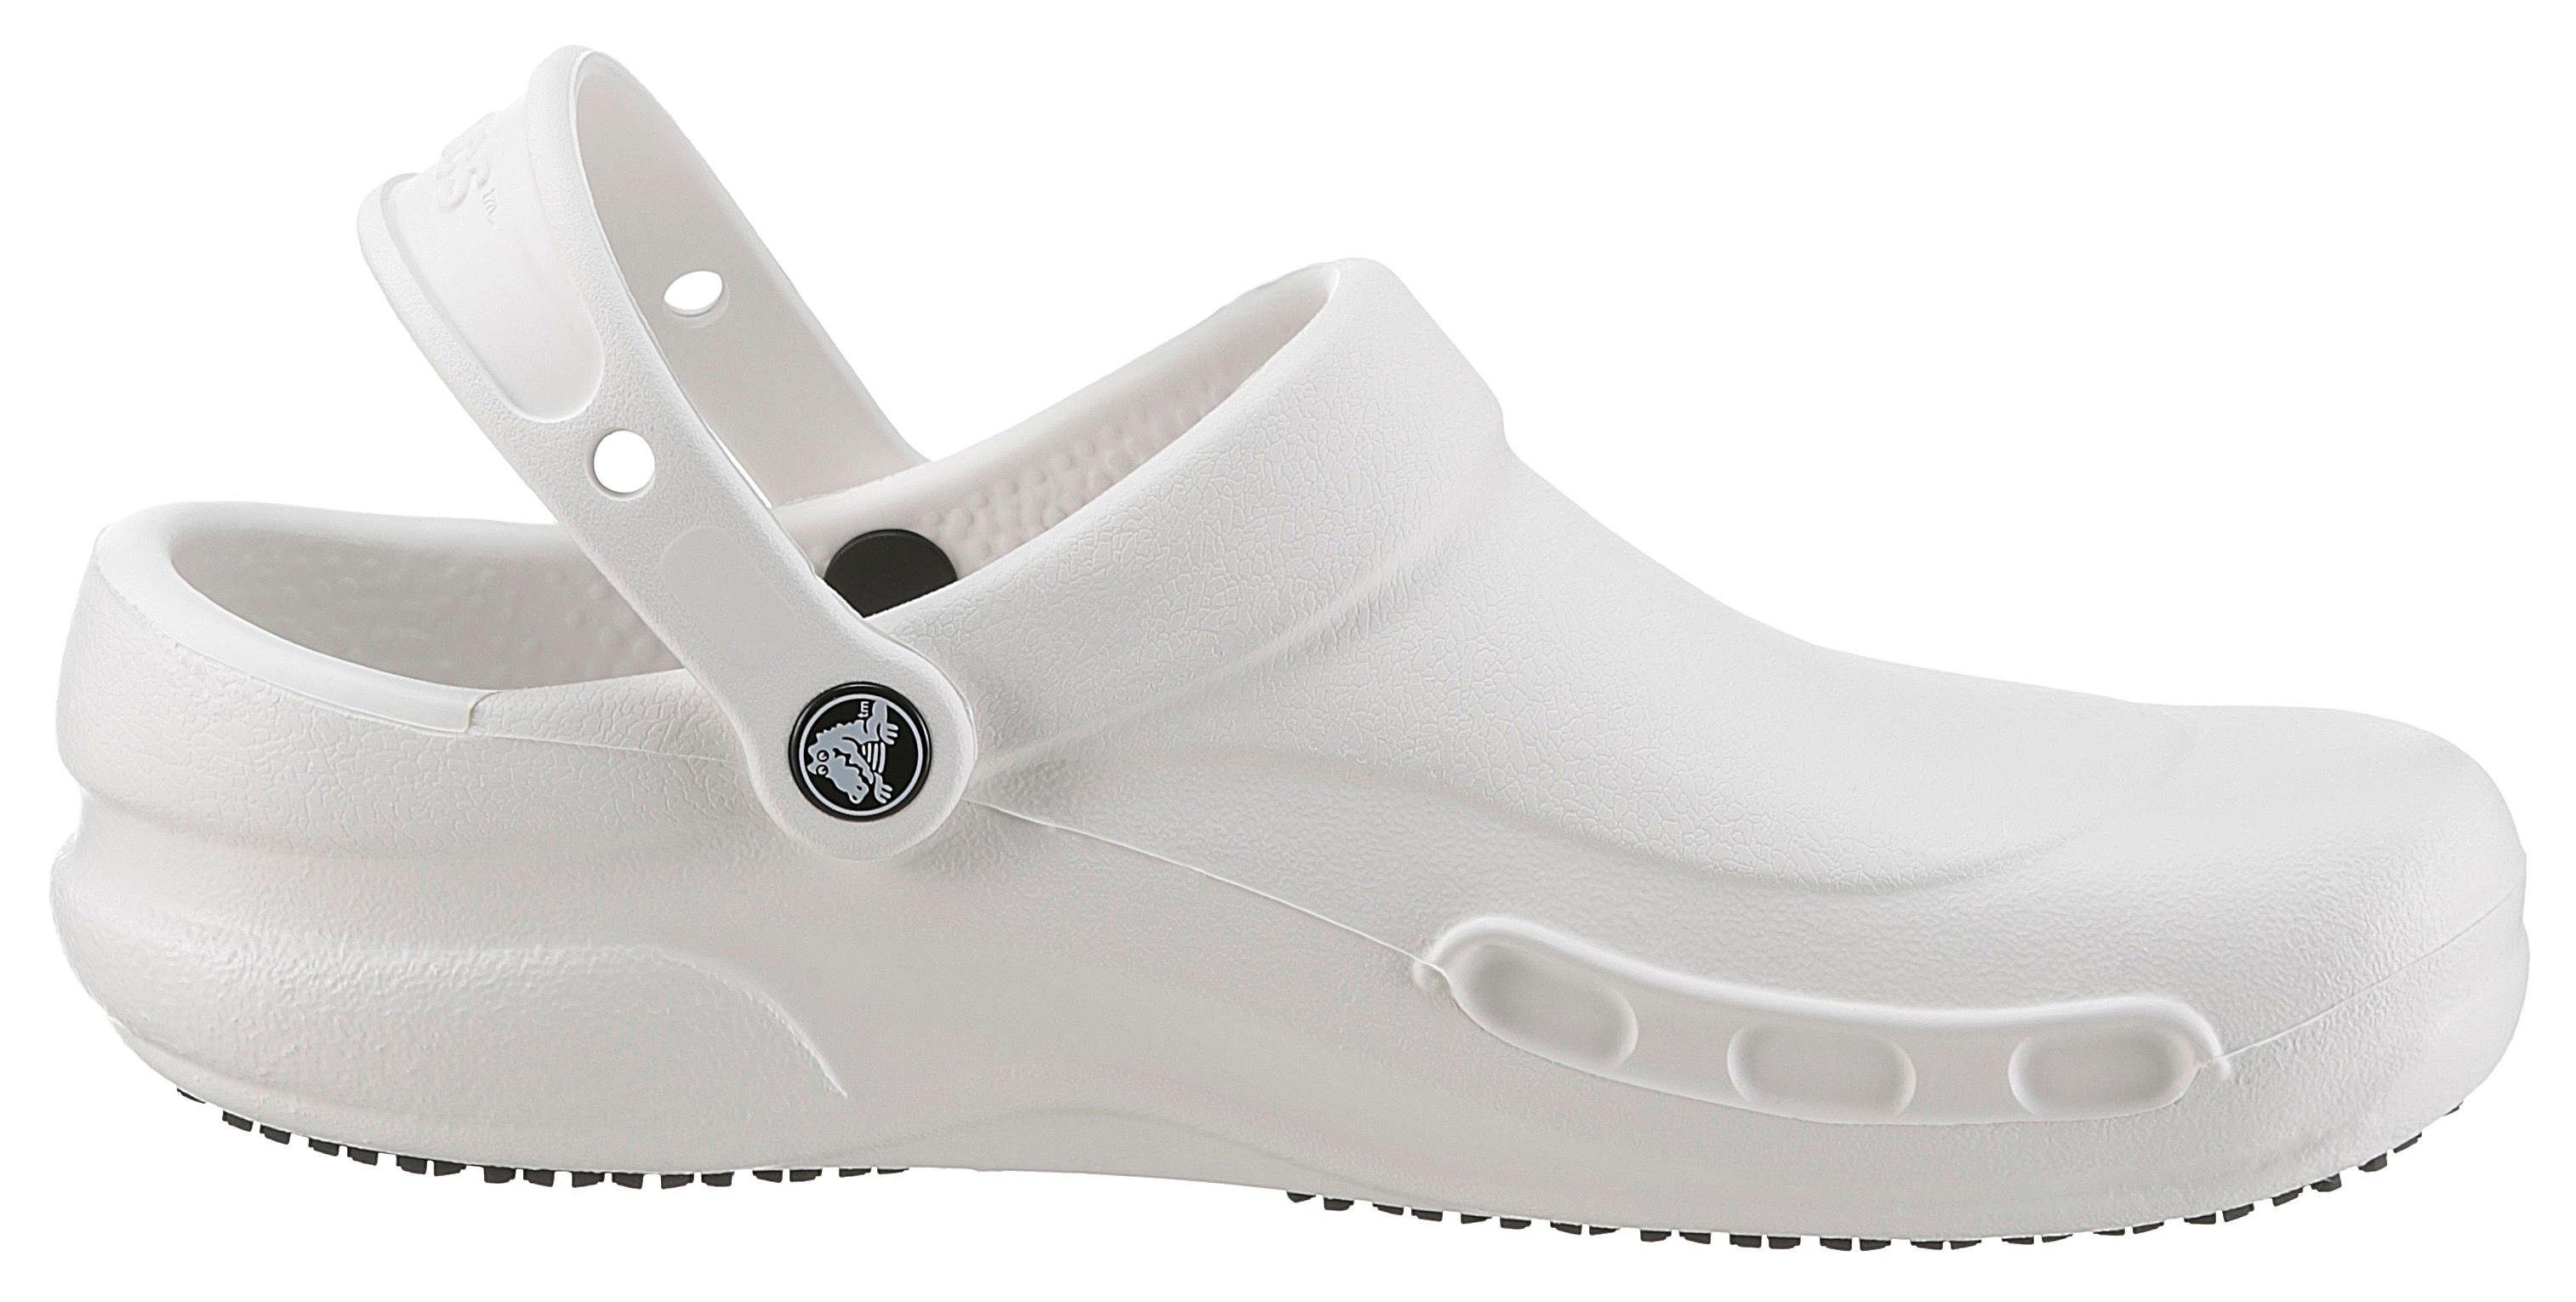 Crocs BISTRO Clog mit weiß-offwhite geschlossenem Fußbereich